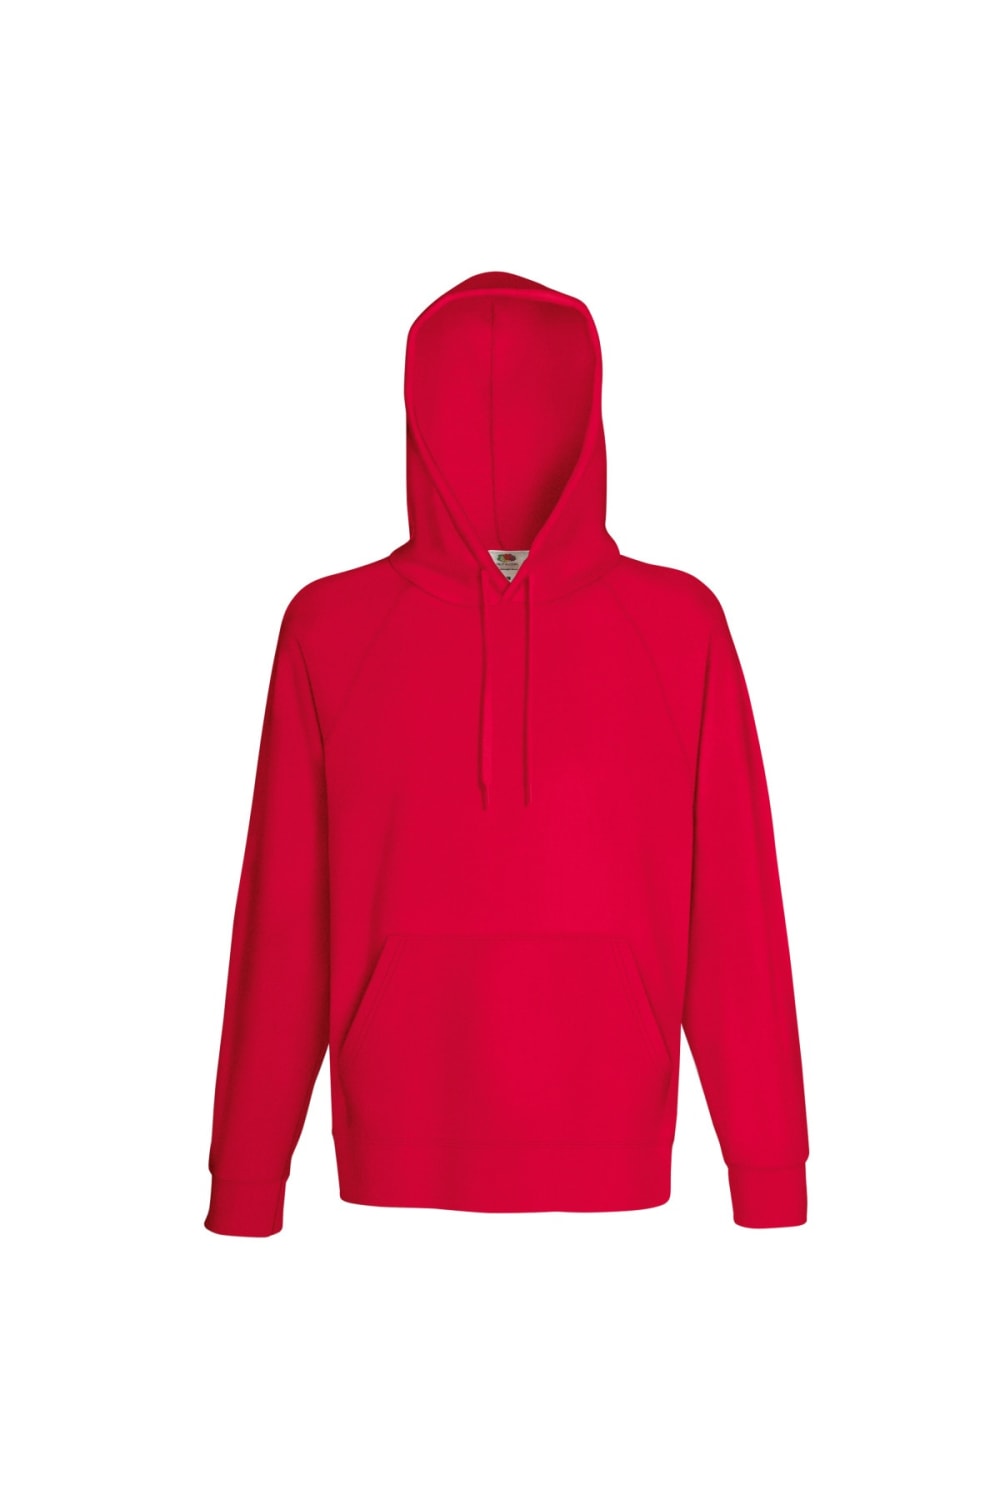 Fruit Of The Loom Mens Lightweight Hooded Sweatshirt / Hoodie (240 GSM) (Red)